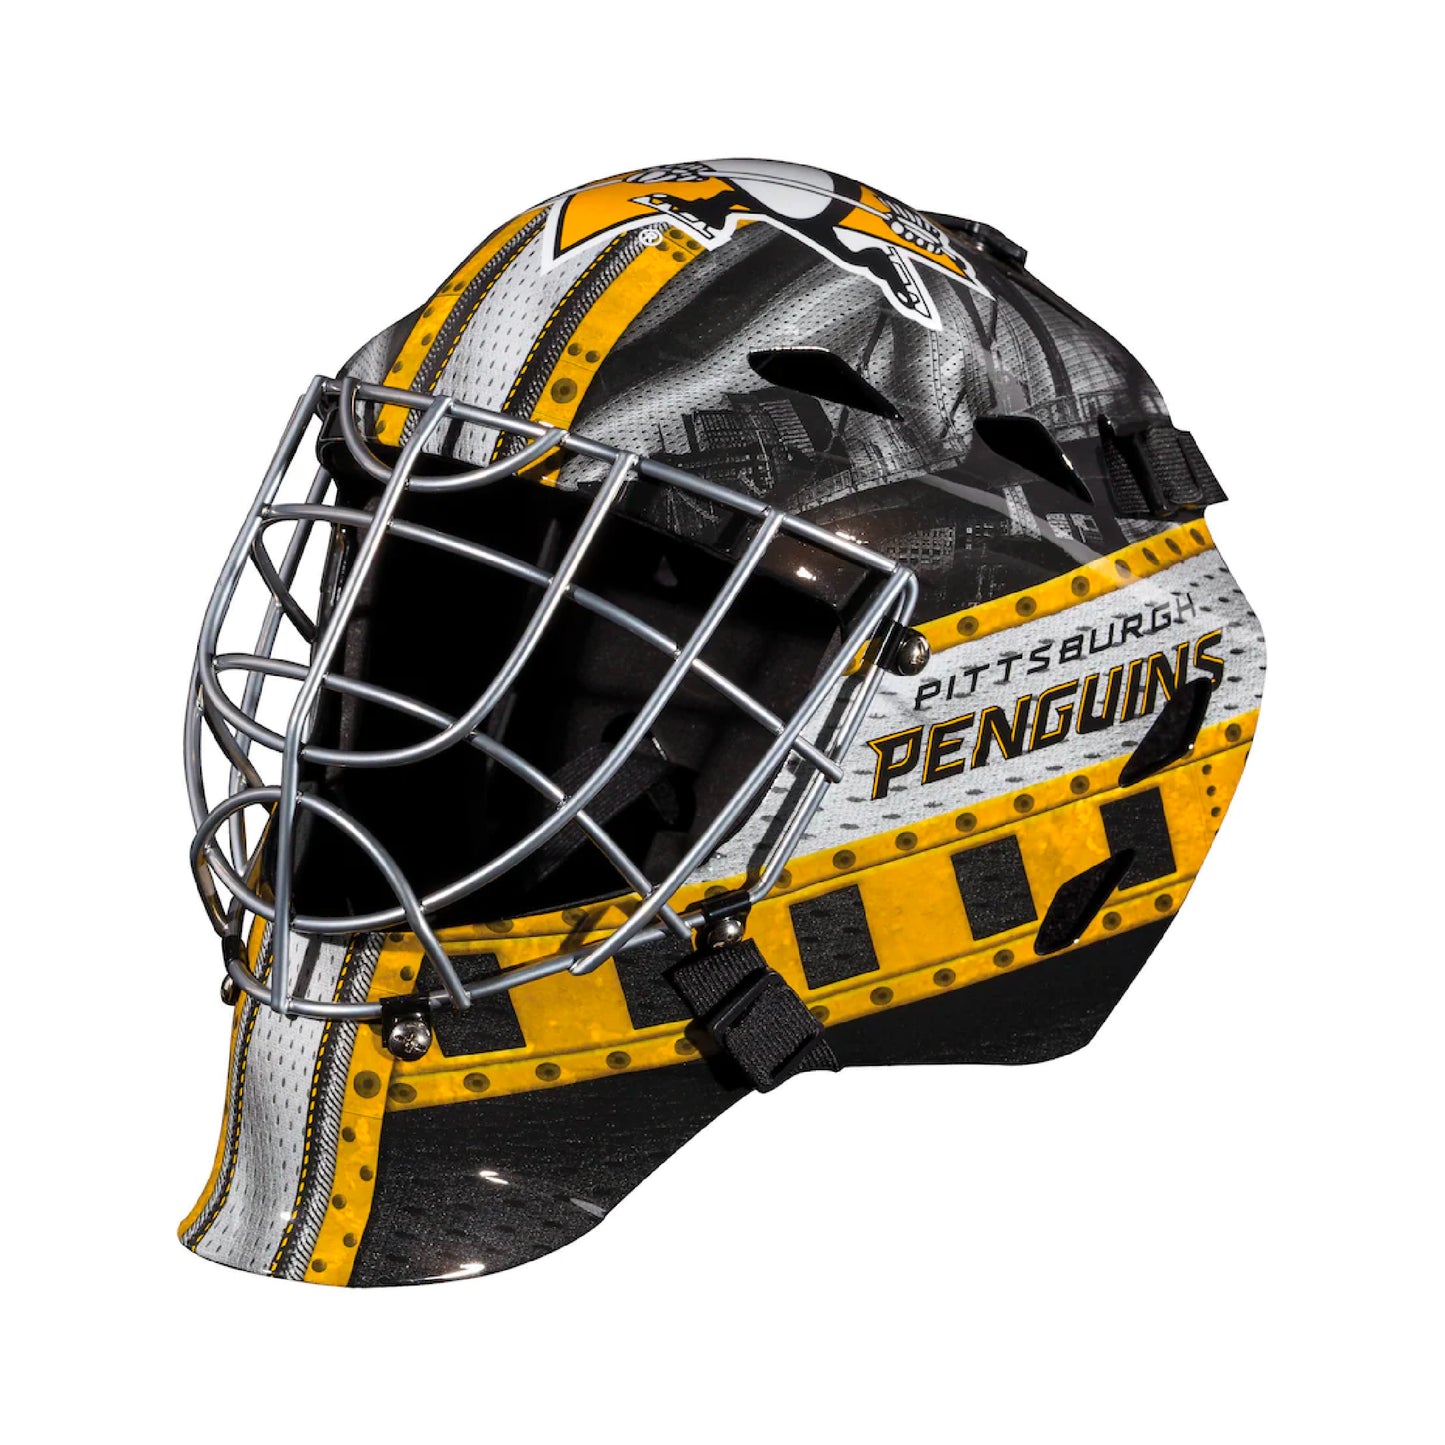 Pittsburgh Penguins Full-Size Goalie Mask